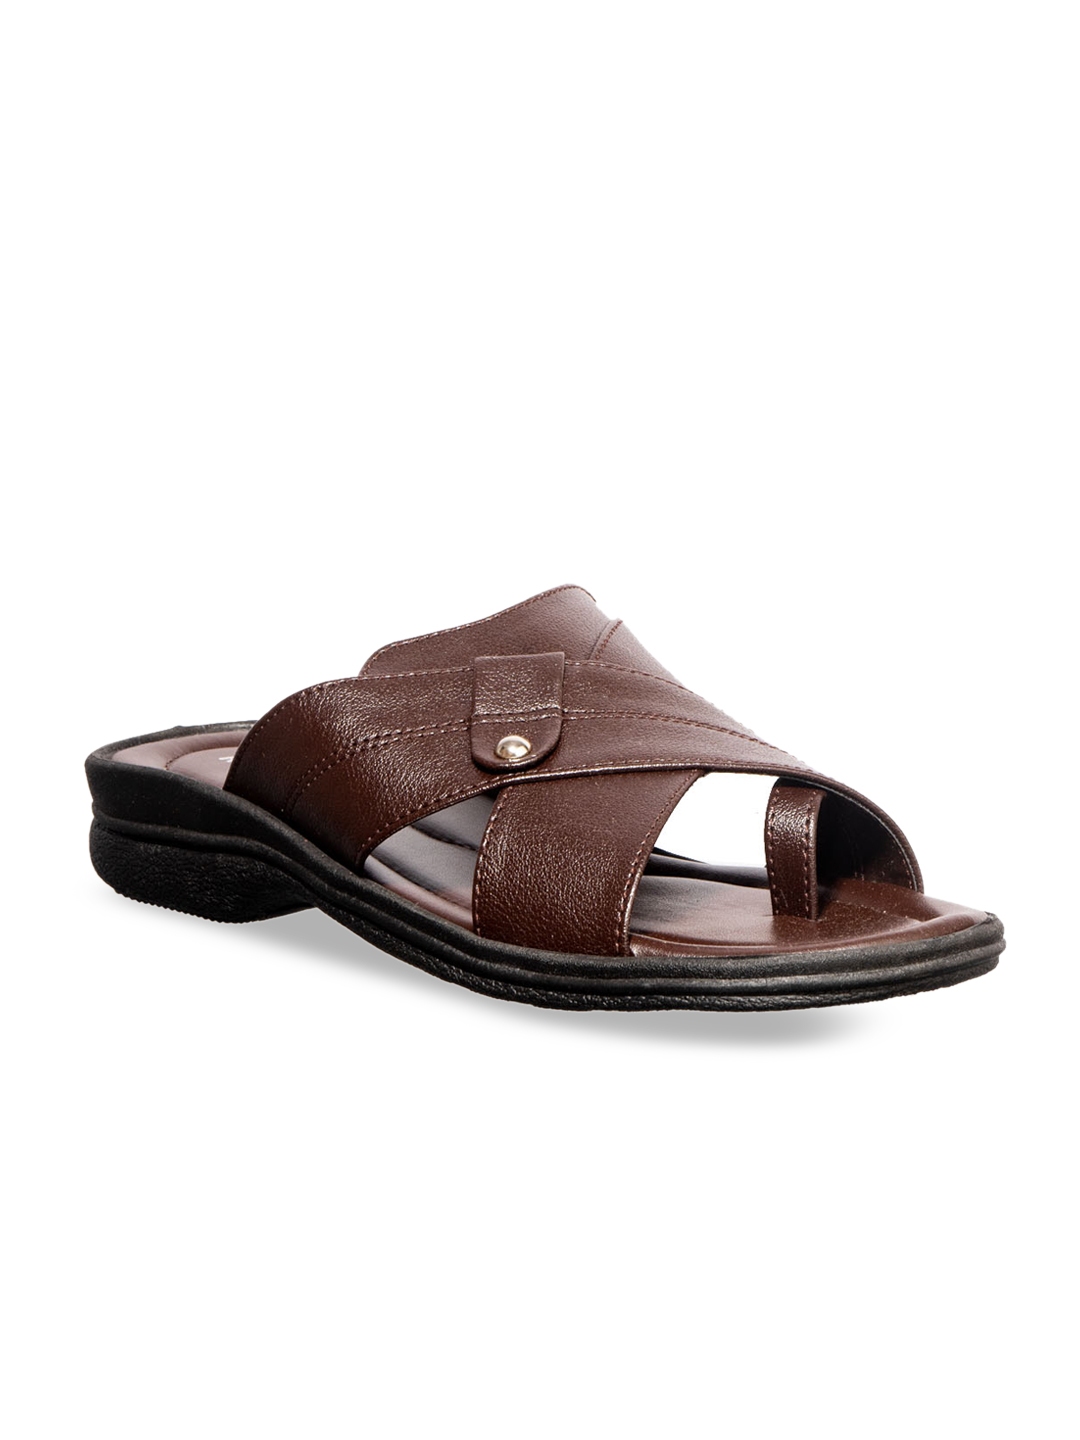 Buy Khadims Men Brown Comfort Sandals - Sandals for Men 12003782 | Myntra